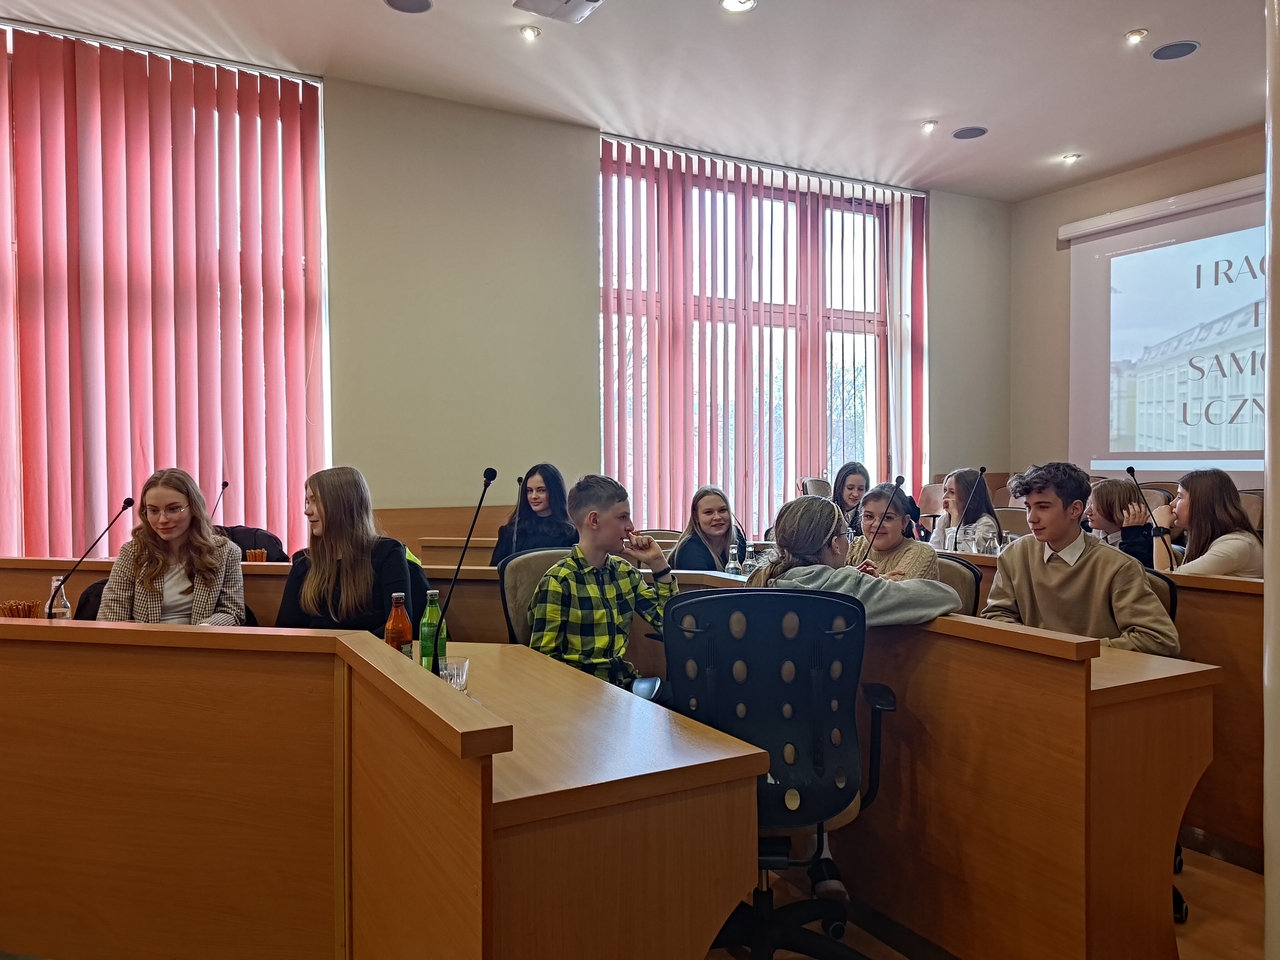 W ratuszu odbyło się I Raciborskie Forum Samorządów Uczniowskich [ZDJĘCIA]